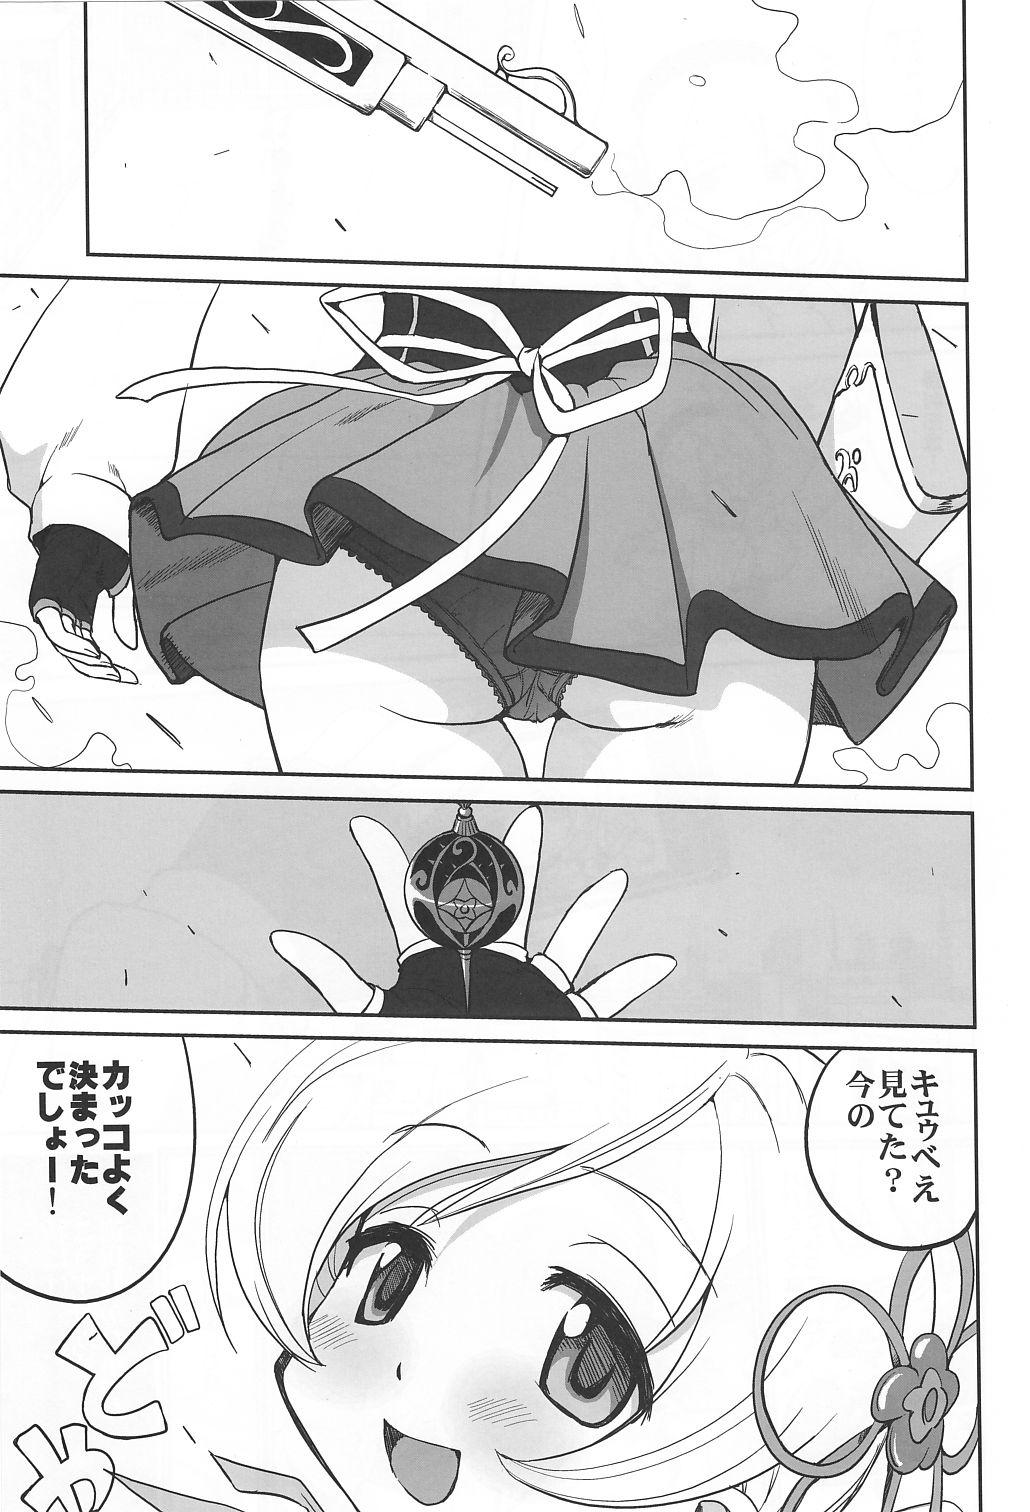 Harcore Dare mo Shiranai - Puella magi madoka magica Safado - Page 4